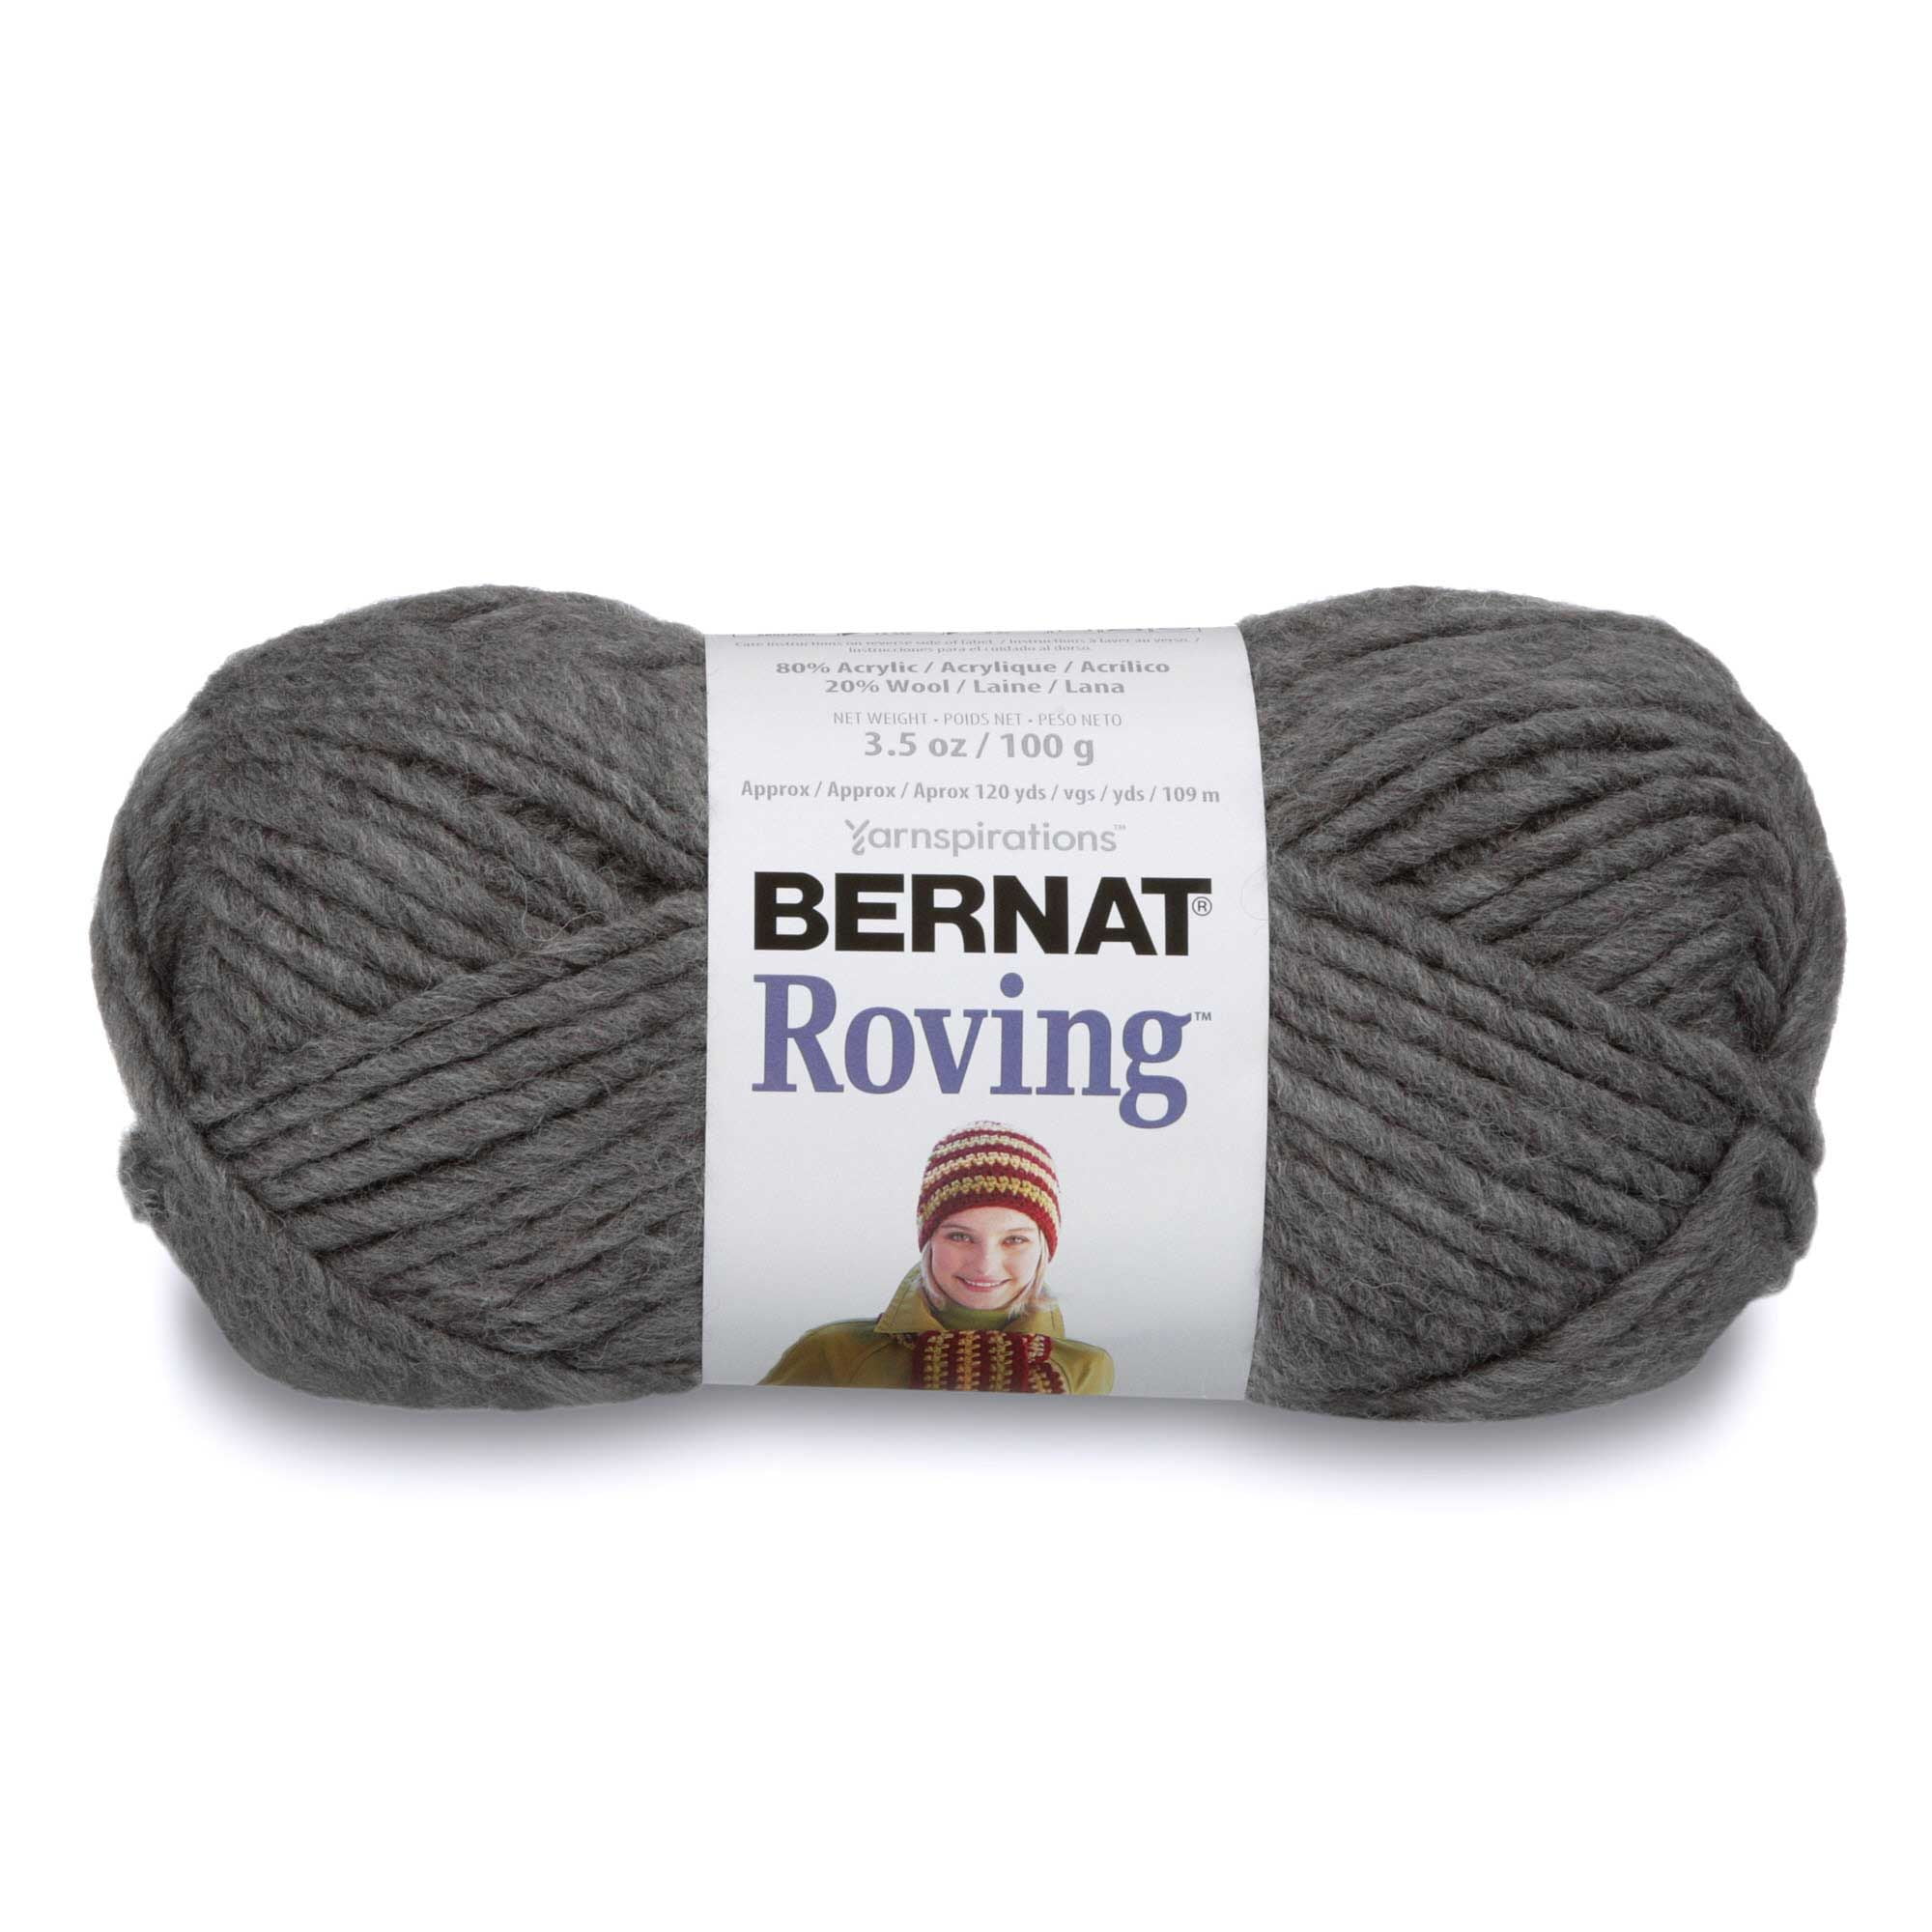  Bernat Roving Yarn, 3.5 oz, Gauge 5 Bulky, Low Tide